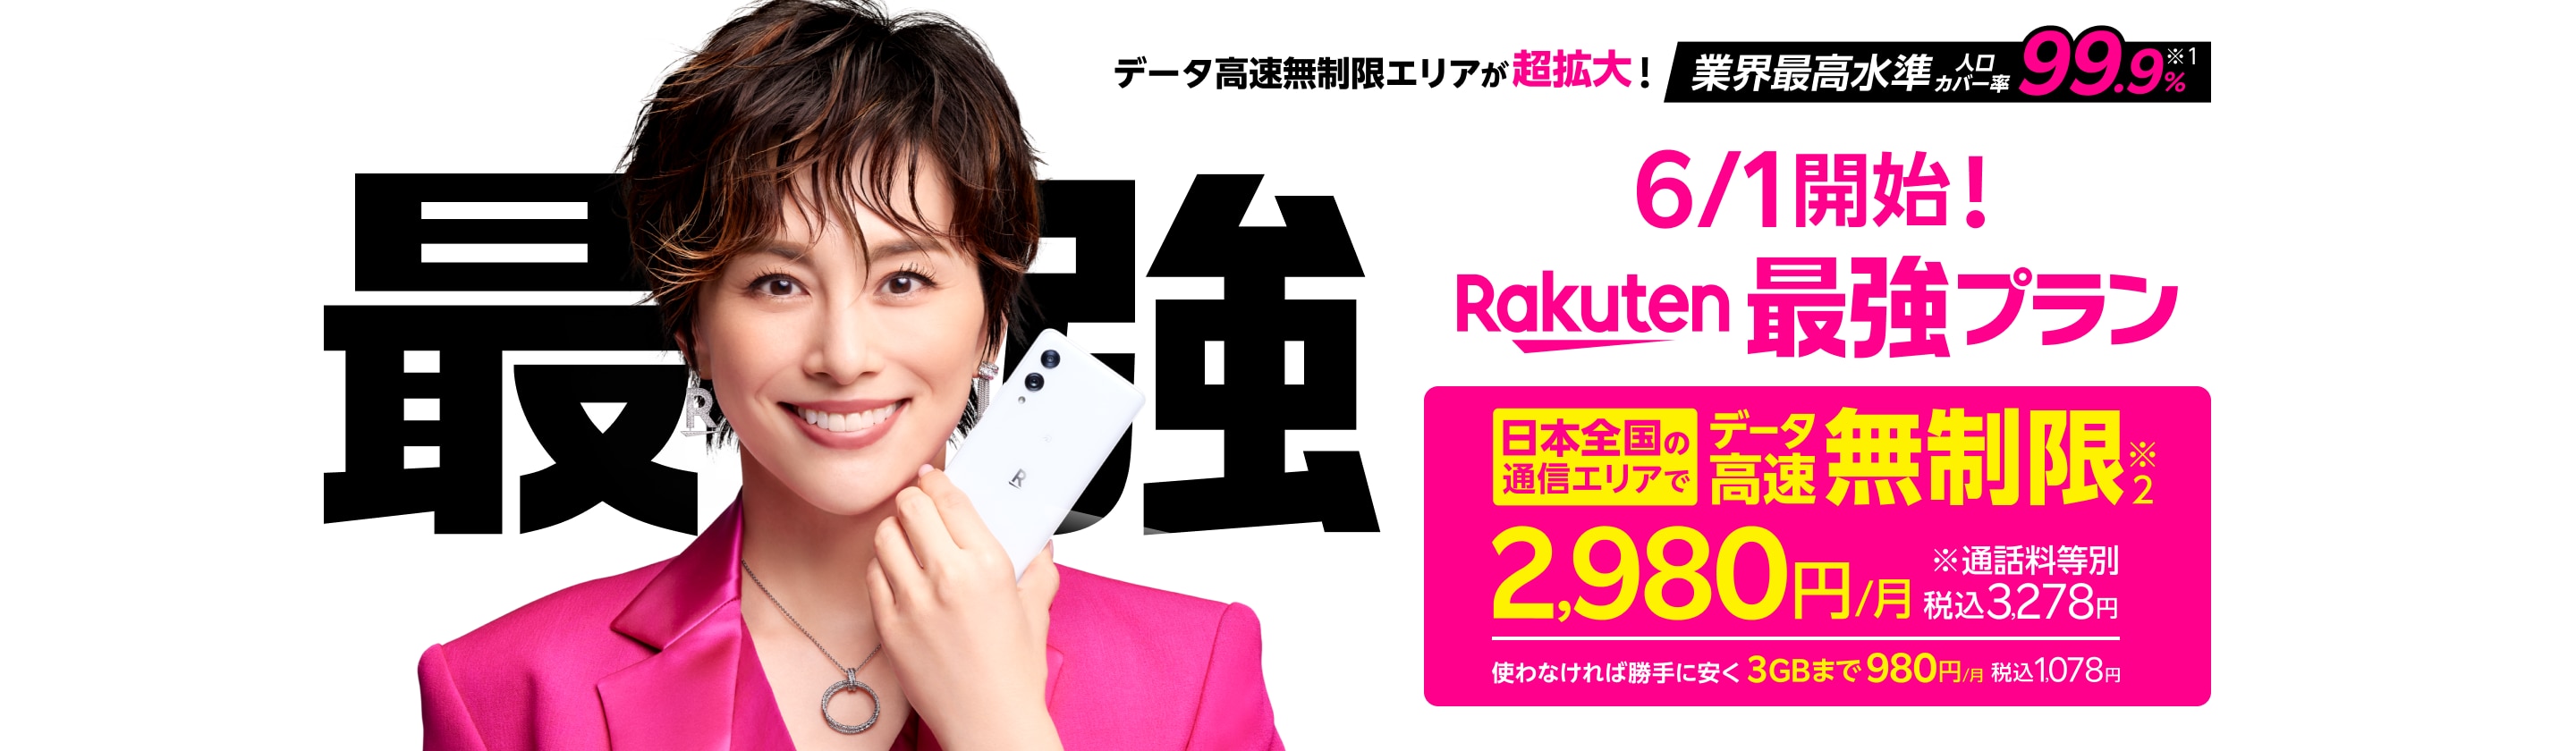 Rakuten最強プラン 業界最高水準人口カバー率99.9%※1 日本全国の通信エリアでデータ高速無制限 2,980円/月 税込3,278円※通話料等別 使わなければ勝手に安く3GBまで980円/月 税込1,078円